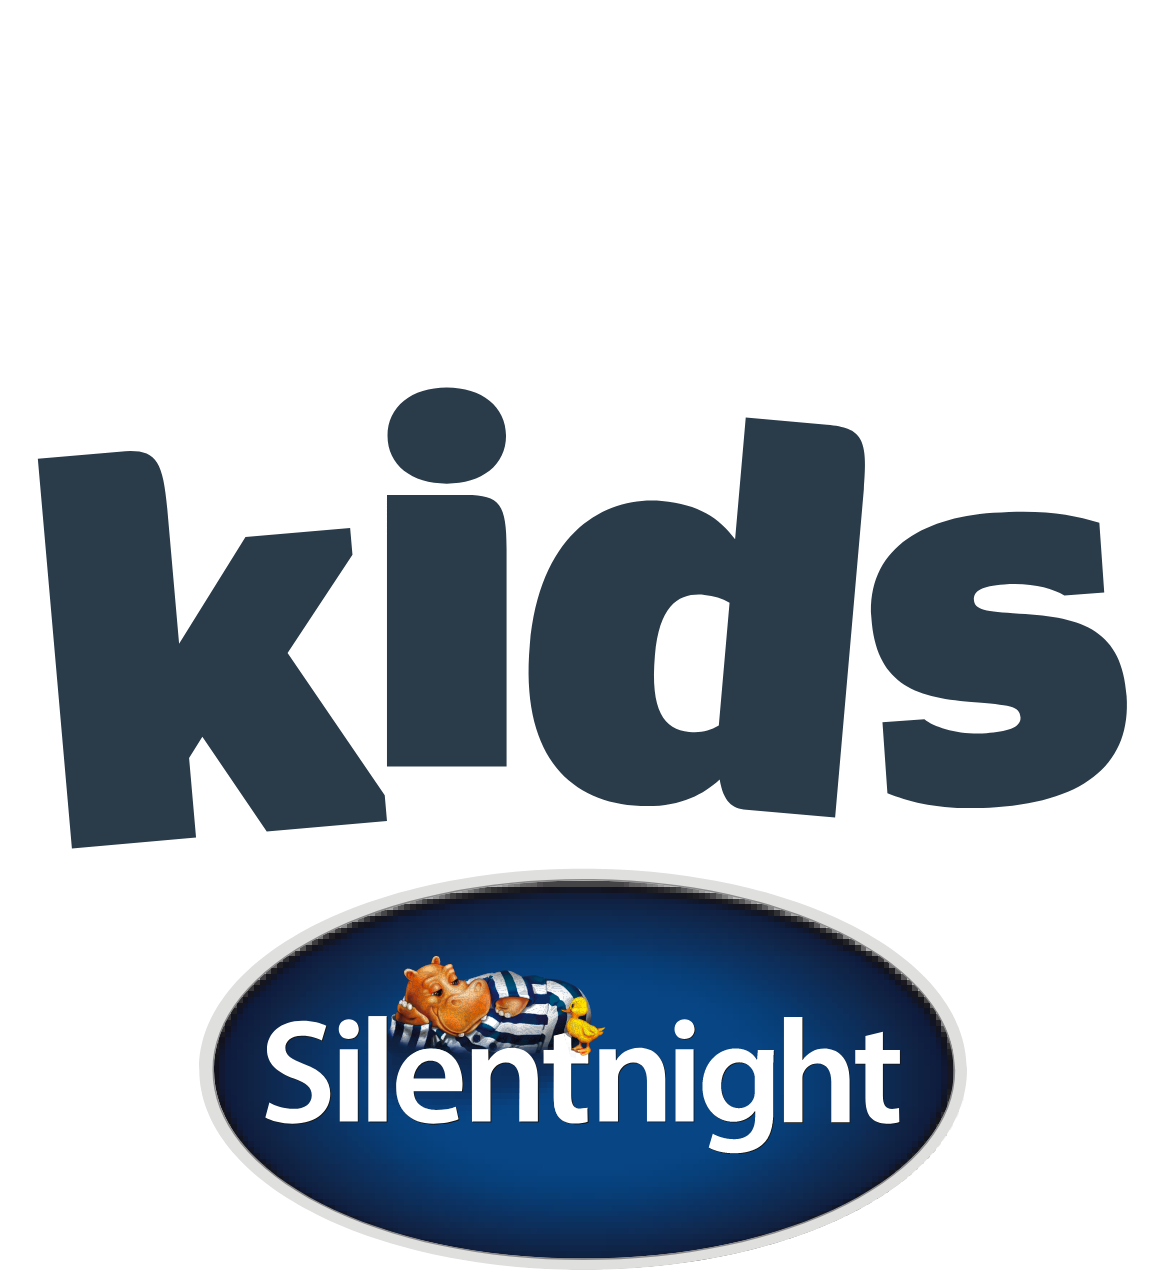 Silentnight healthy growth kids